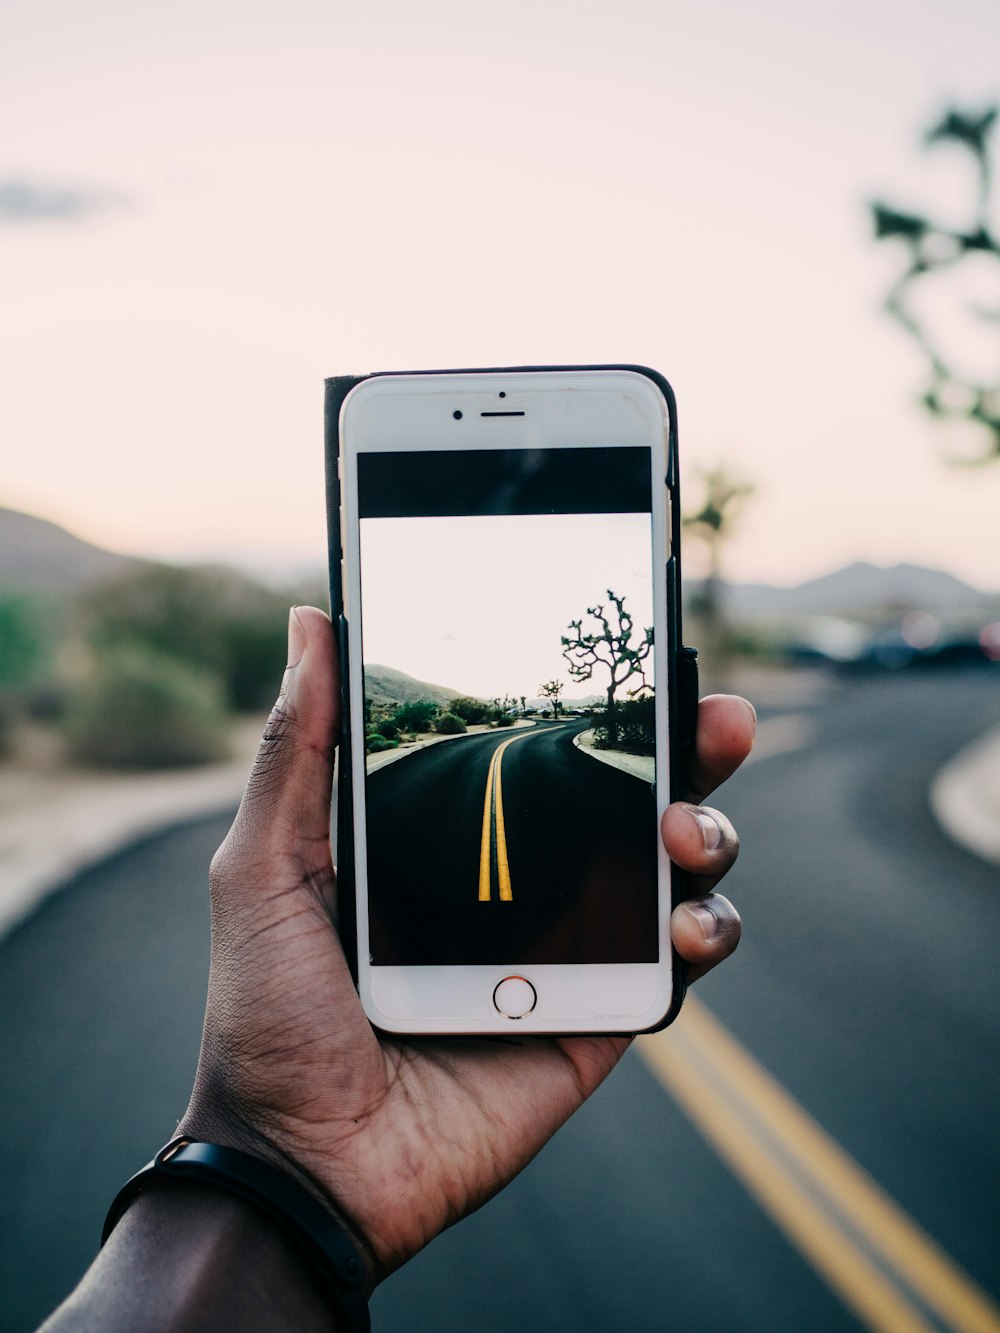 persona usando el iPhone 6 dorado capturando la carretera